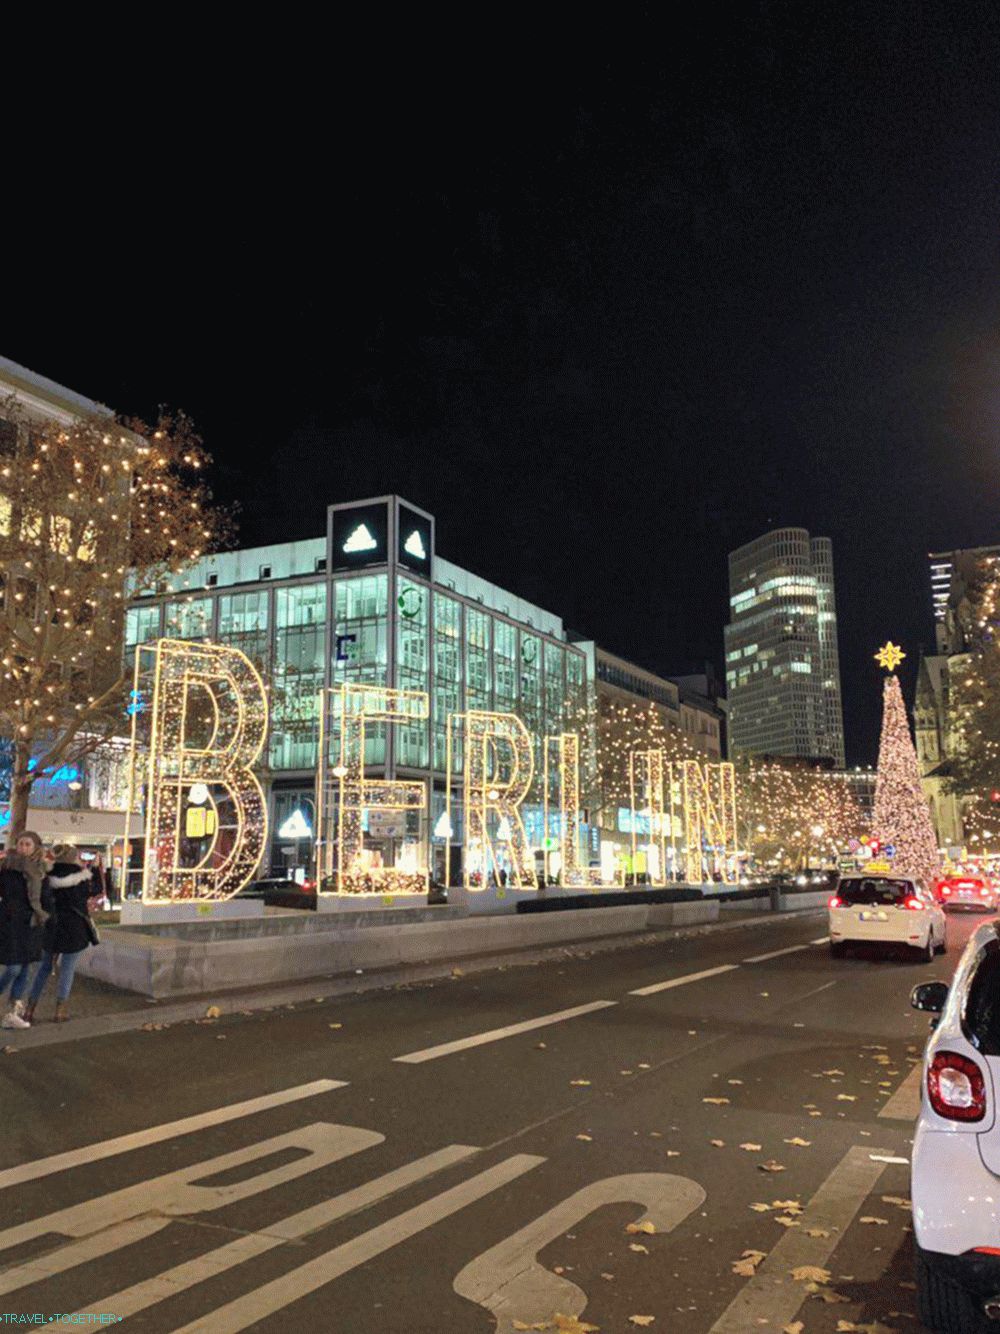 Christmas tree in Berlin